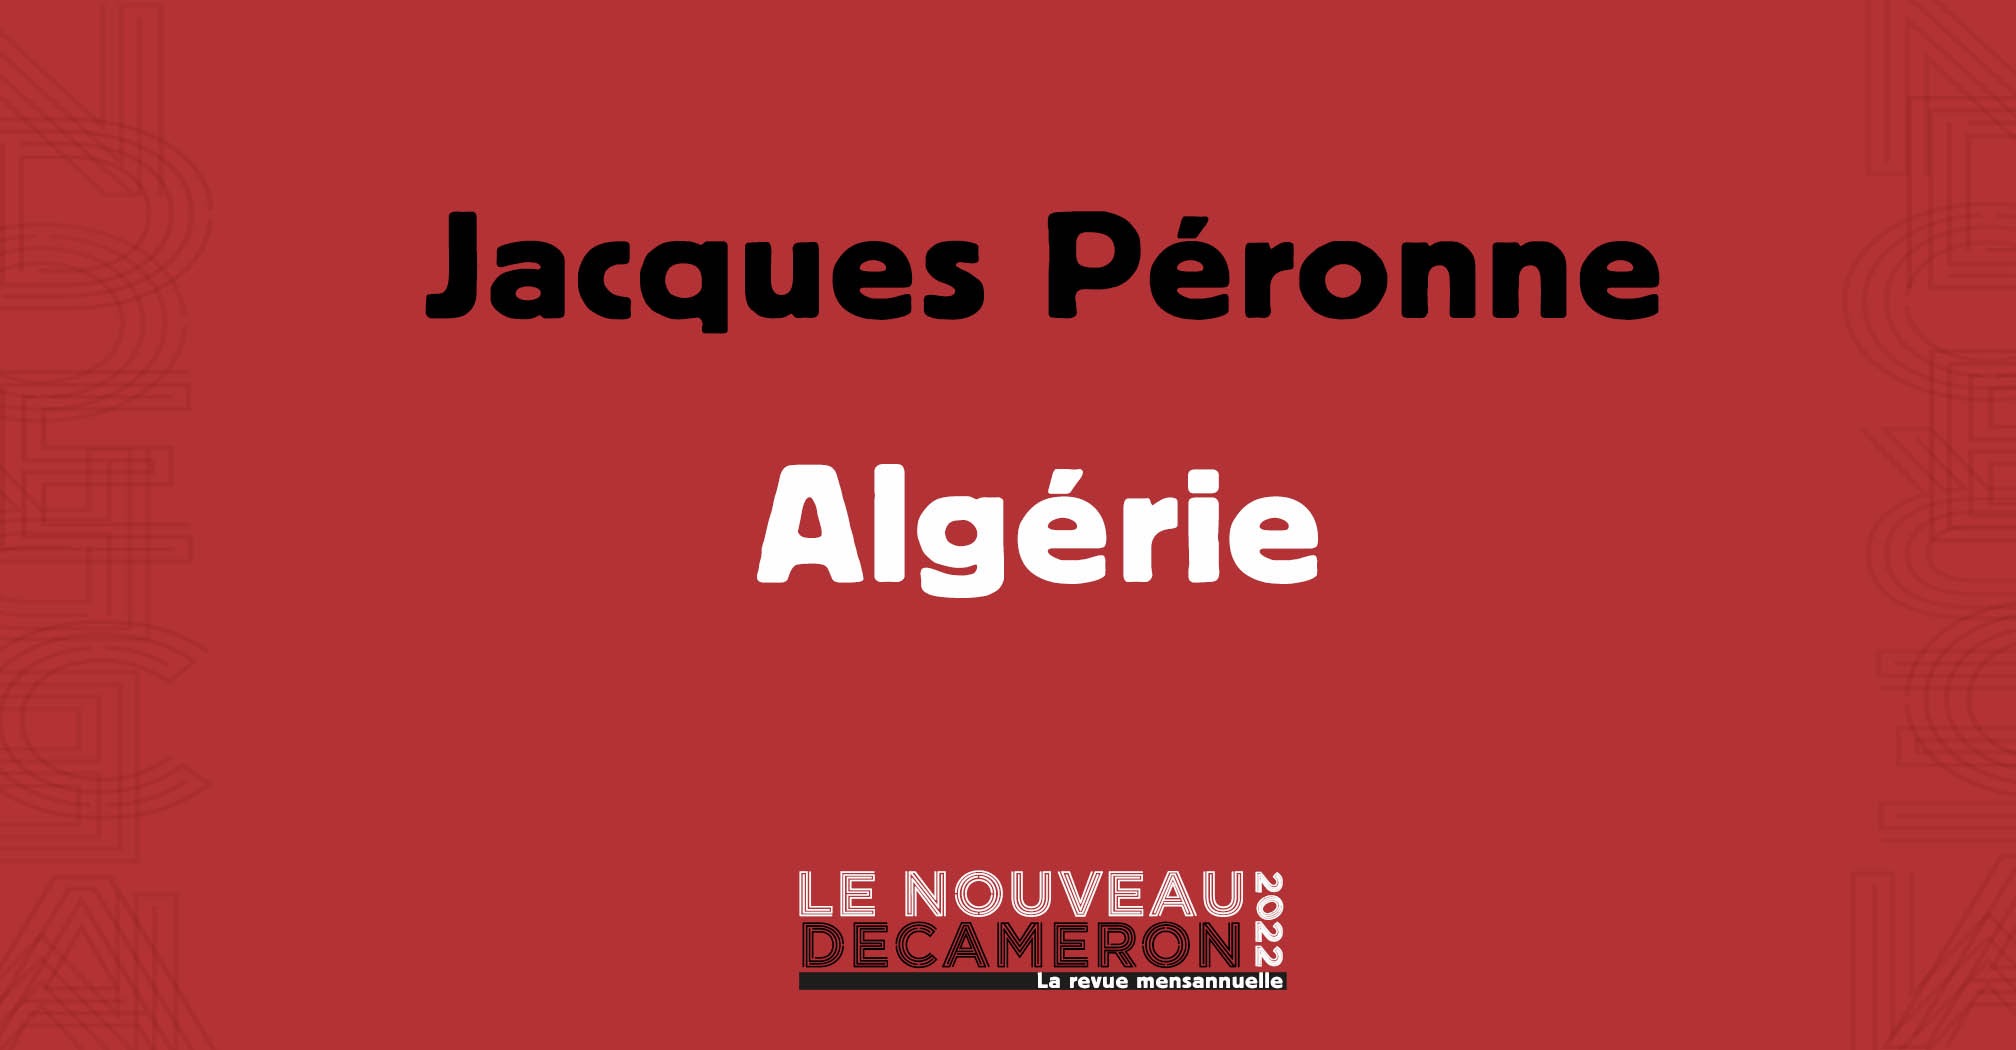  Jacques Péronne - Algérie